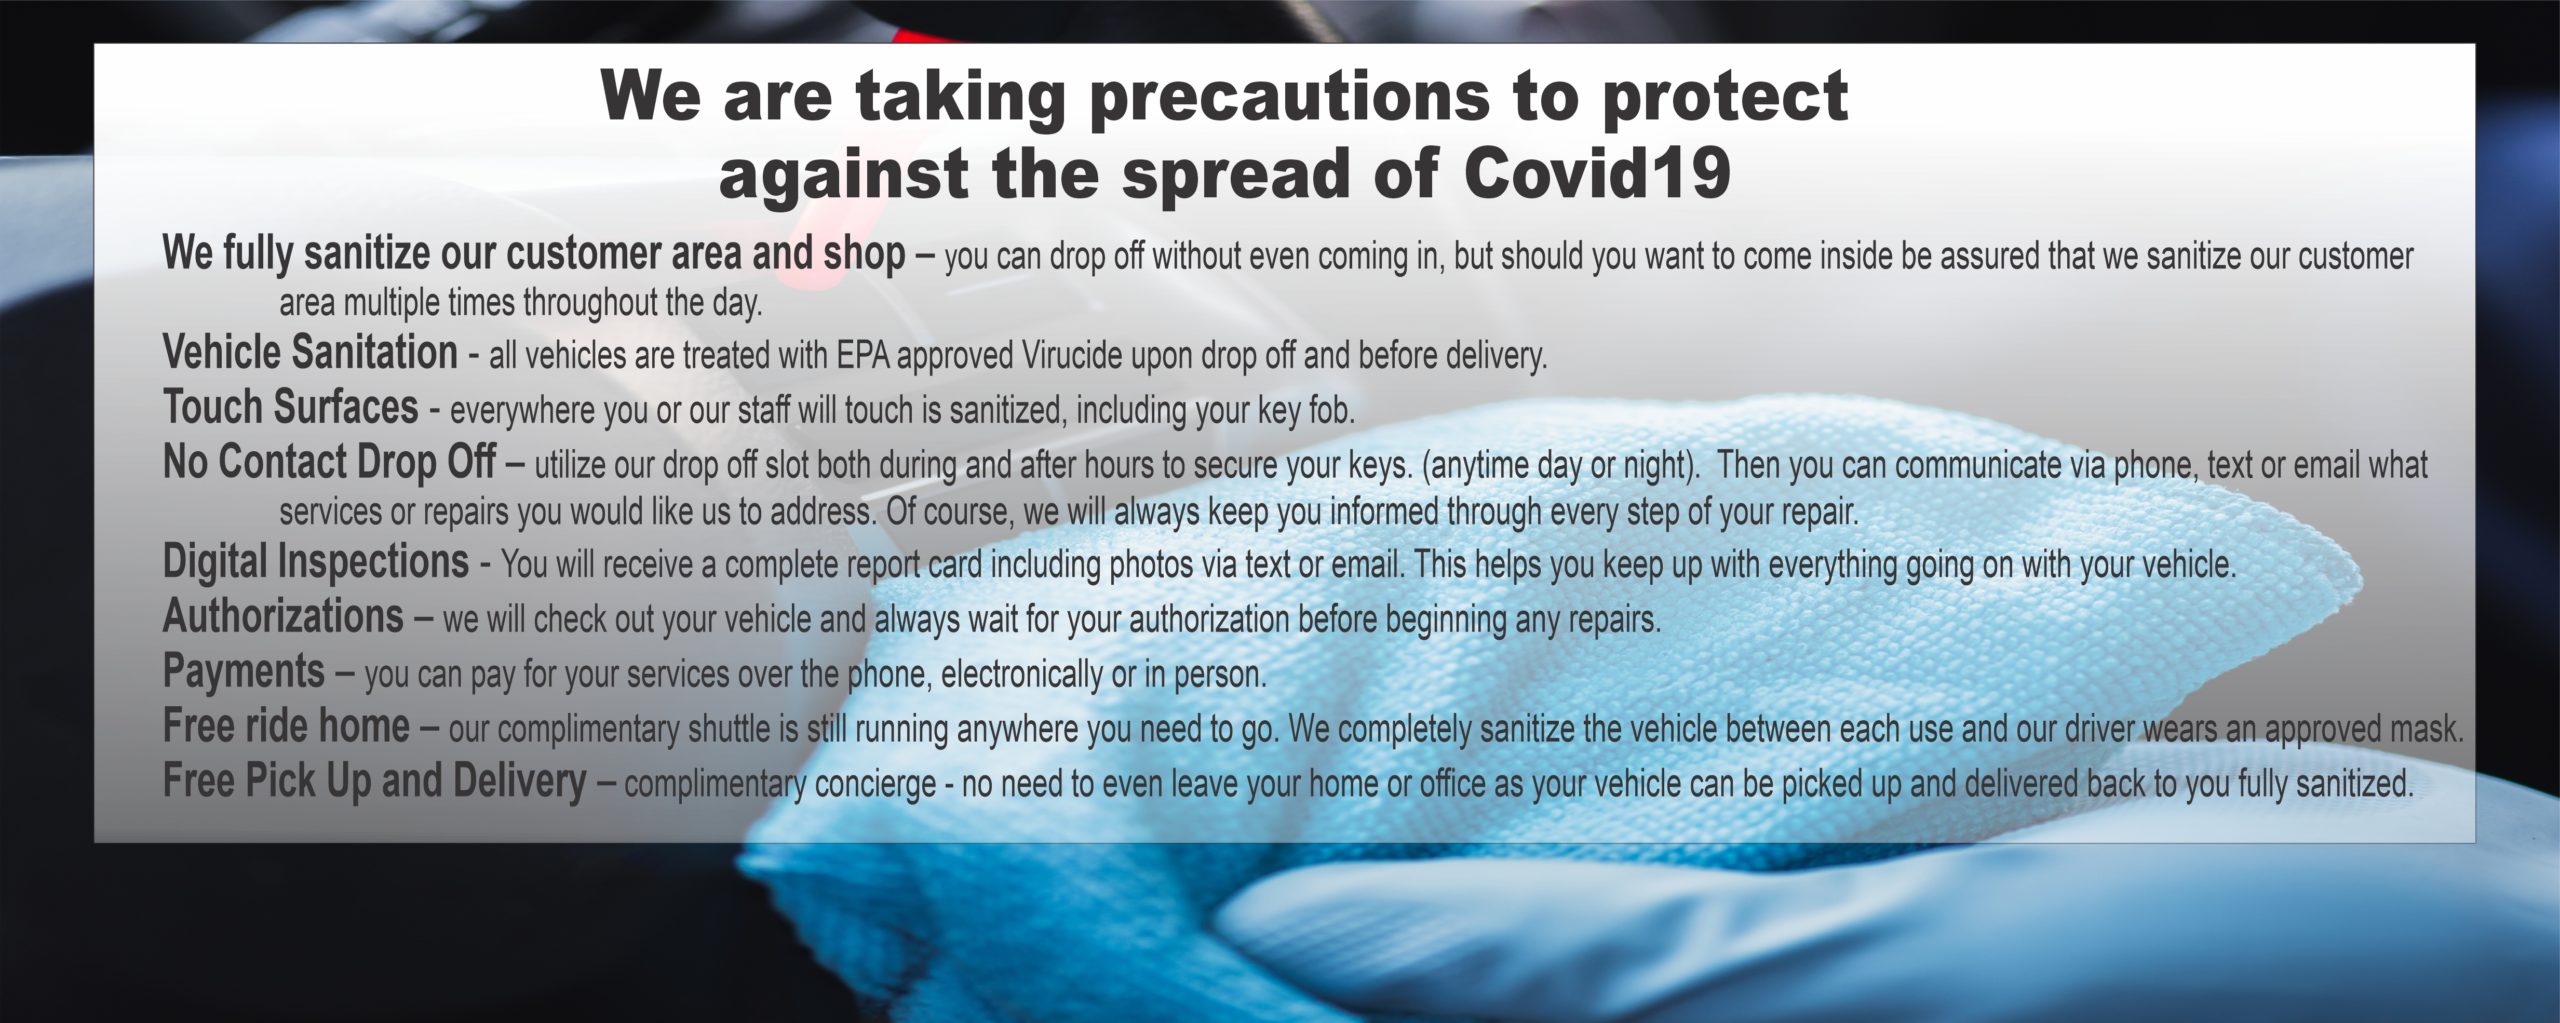 Precautions against Covid 19